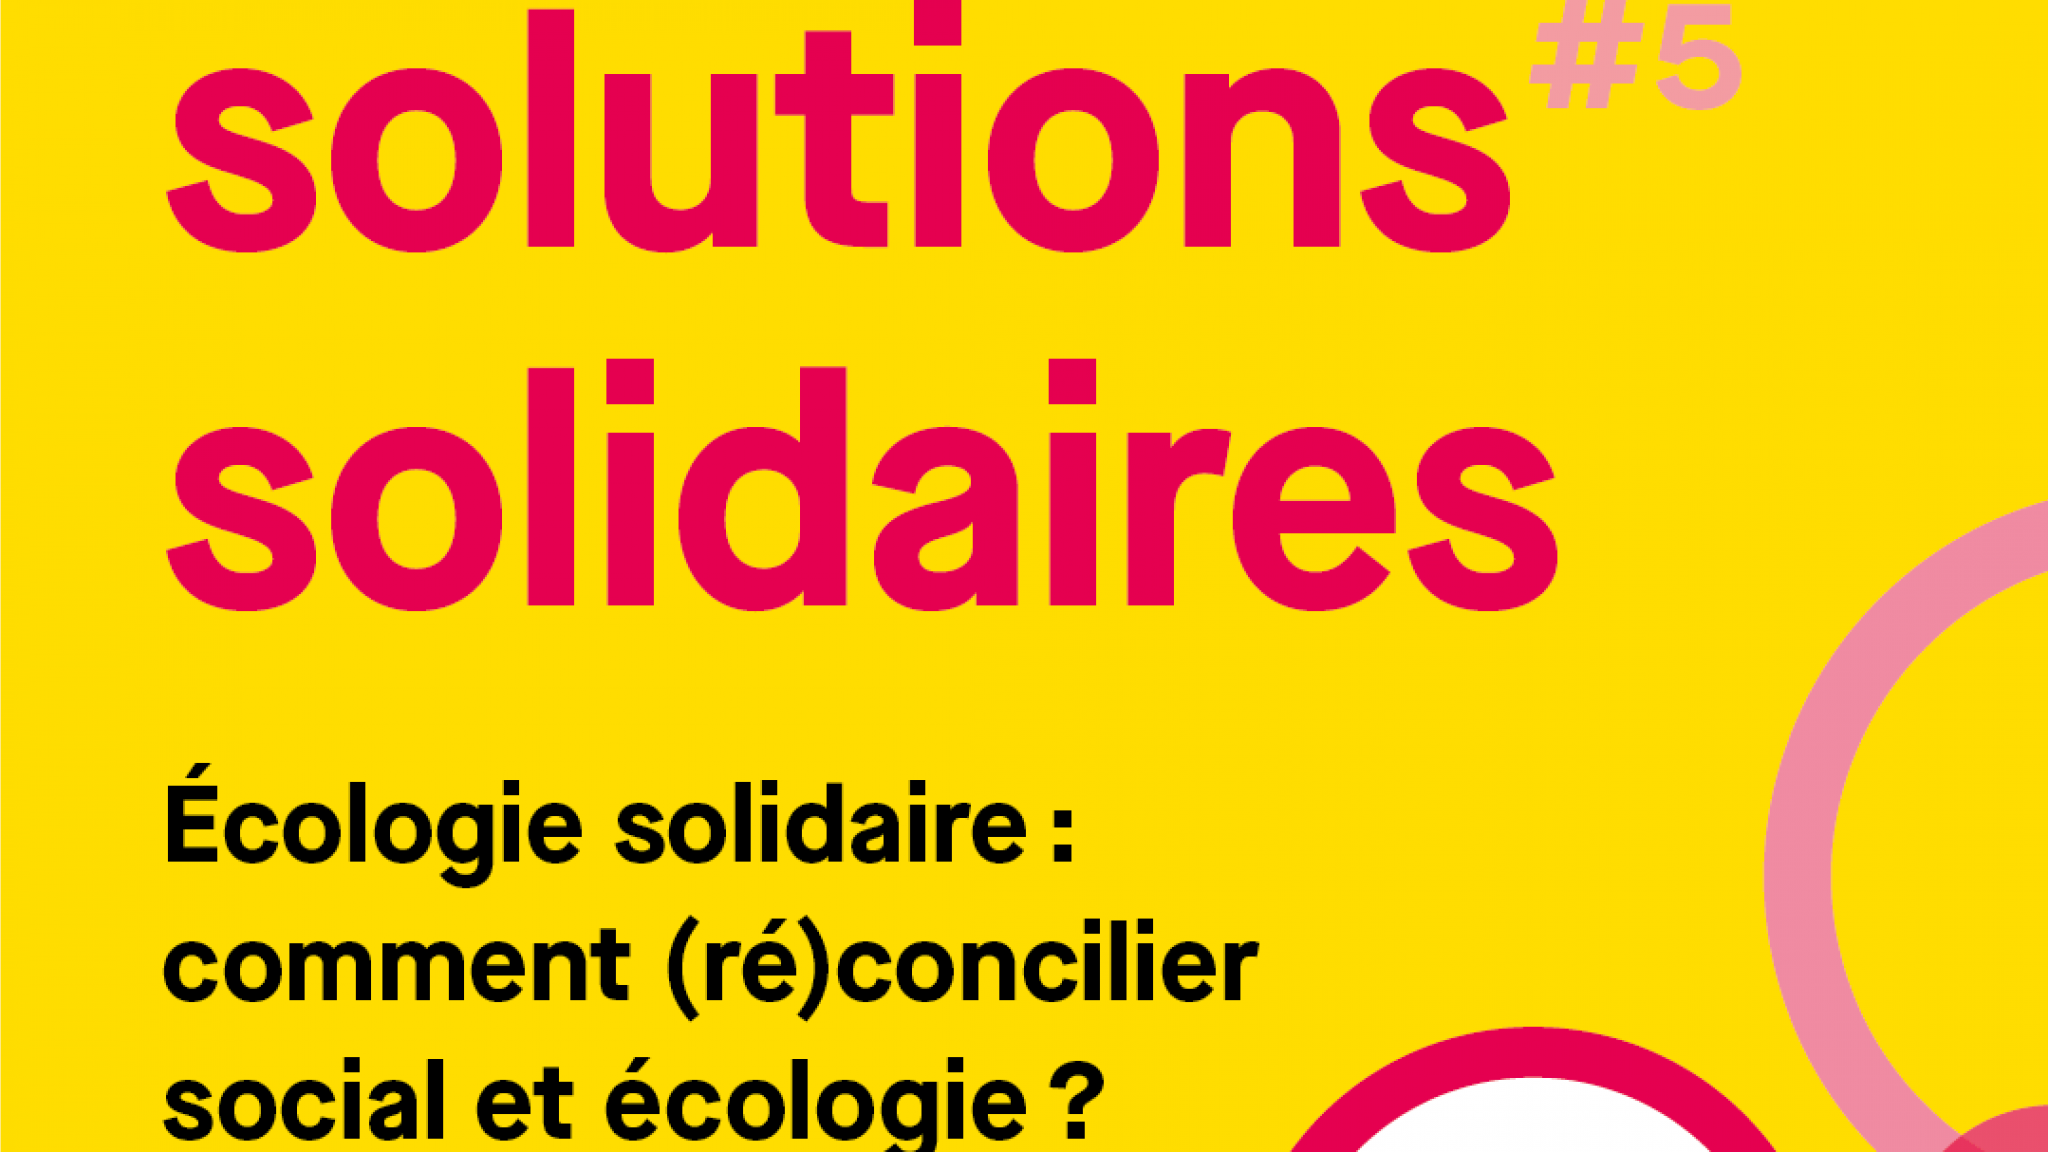 5e édition des solutions solidaires autour de l'écologie solidaire